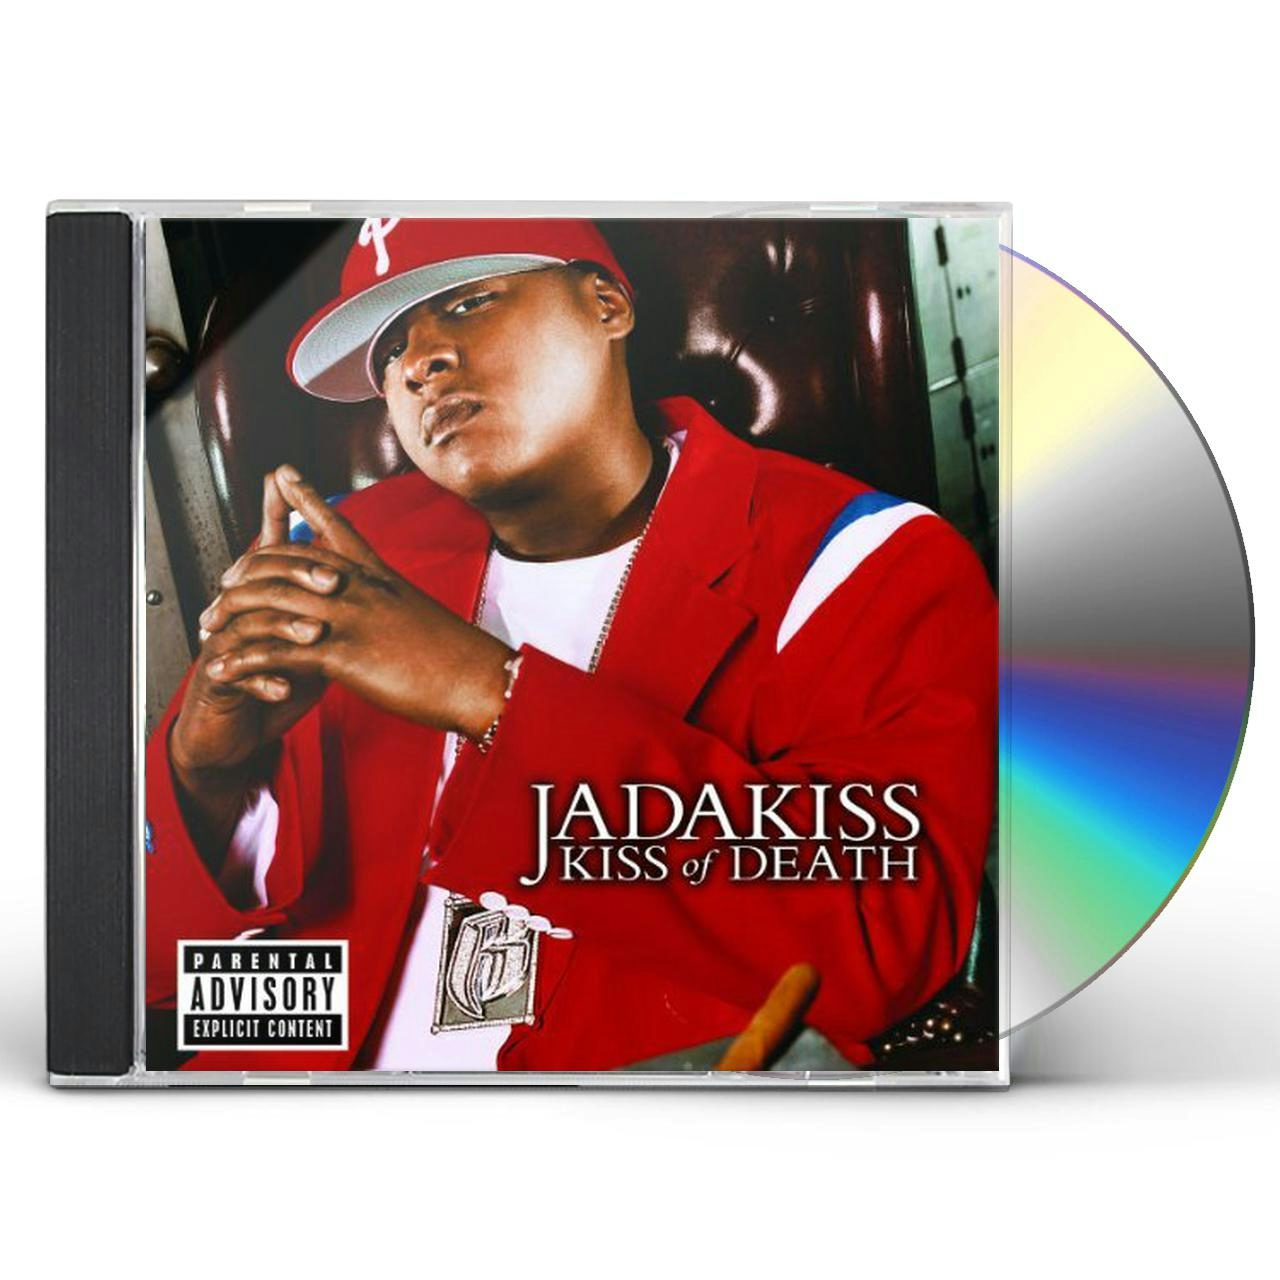 jadakiss kiss of death album download